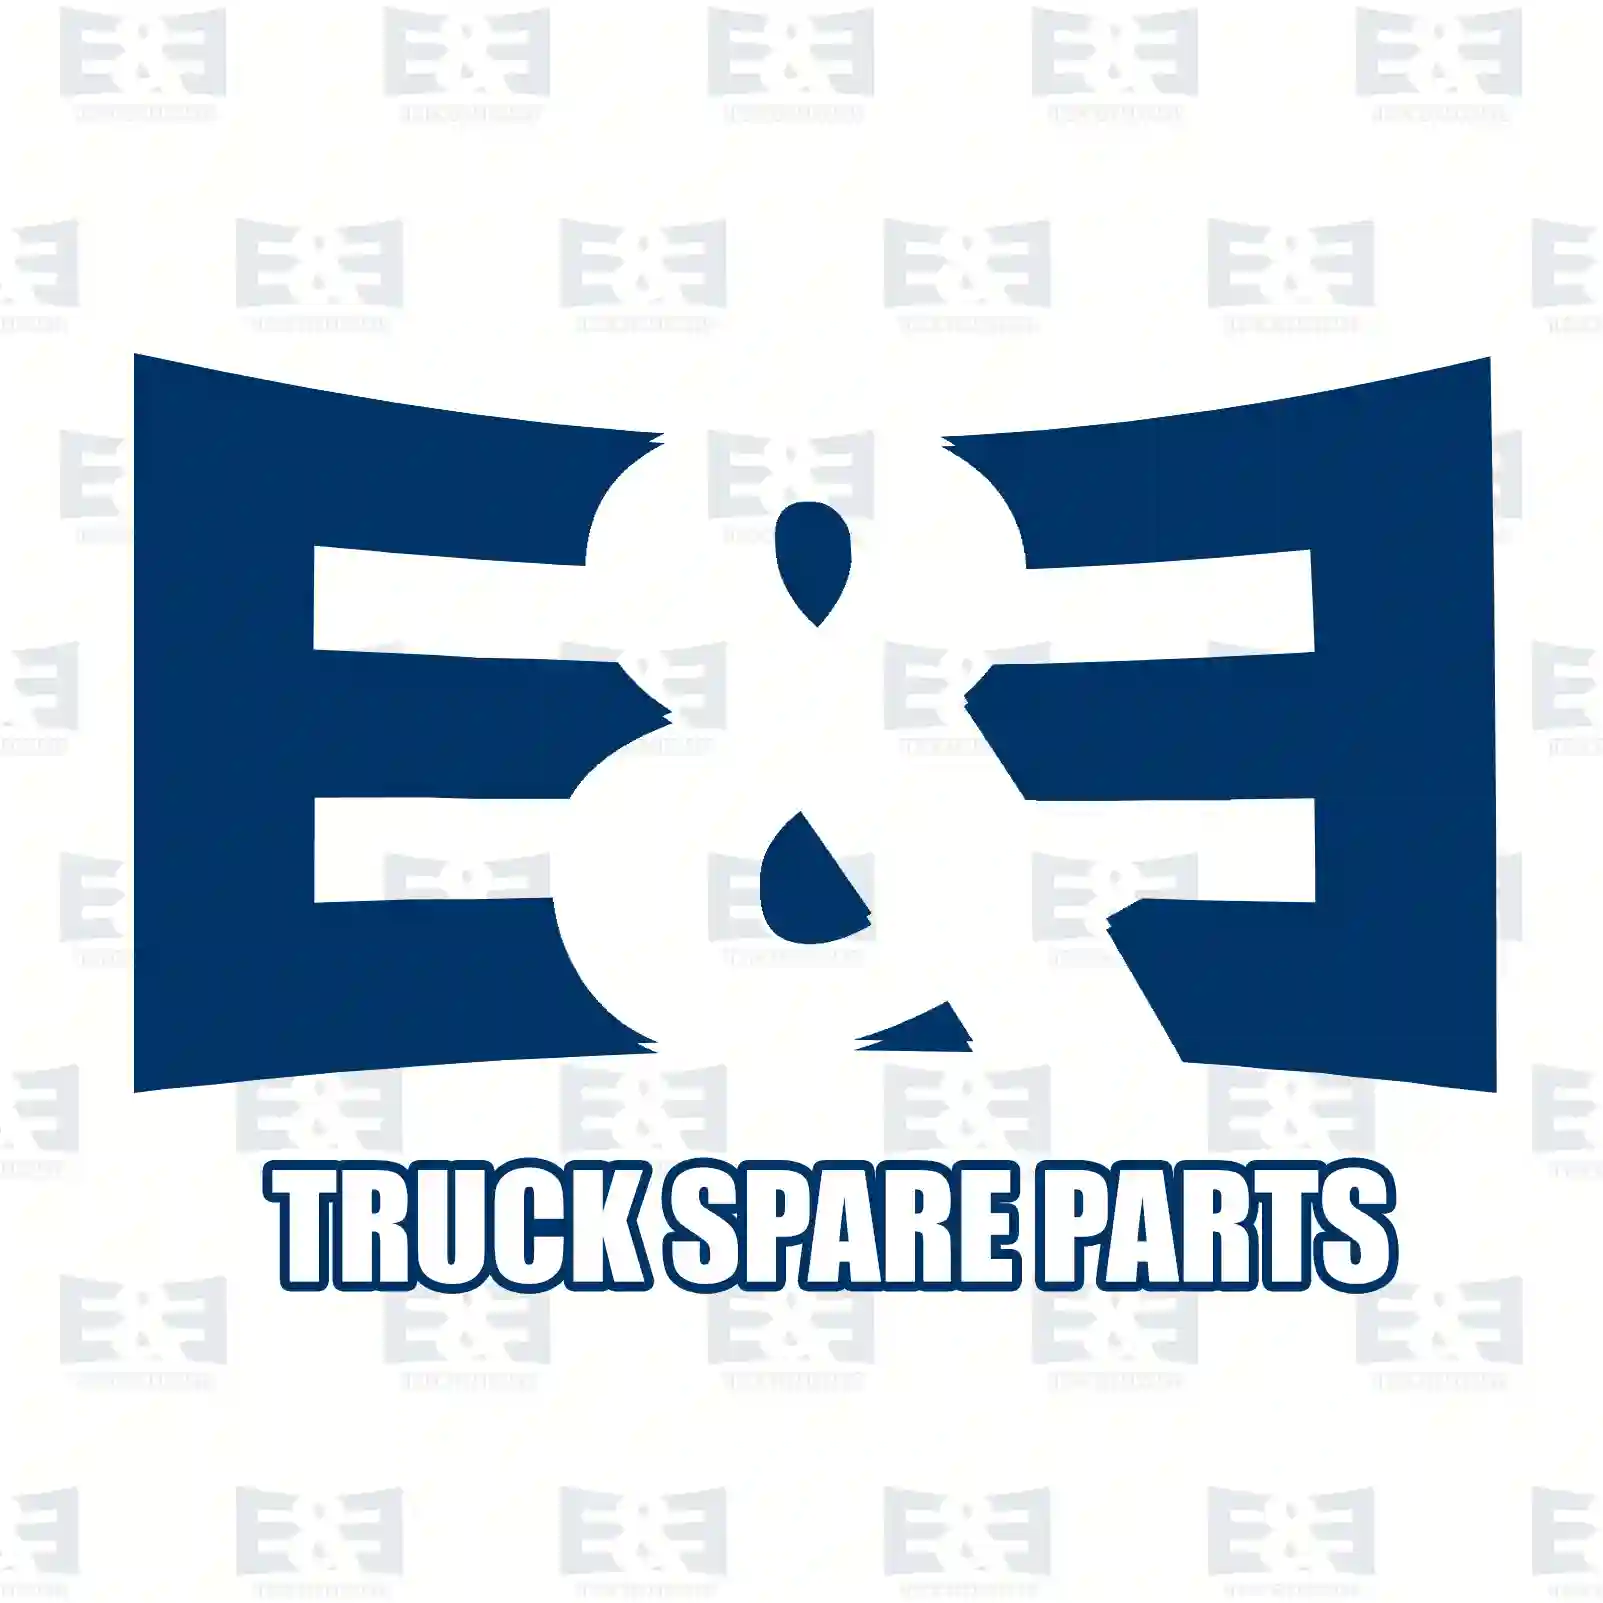 Guide sleeve, 2E2278250, 9722620735, 97326 ||  2E2278250 E&E Truck Spare Parts | Truck Spare Parts, Auotomotive Spare Parts Guide sleeve, 2E2278250, 9722620735, 97326 ||  2E2278250 E&E Truck Spare Parts | Truck Spare Parts, Auotomotive Spare Parts